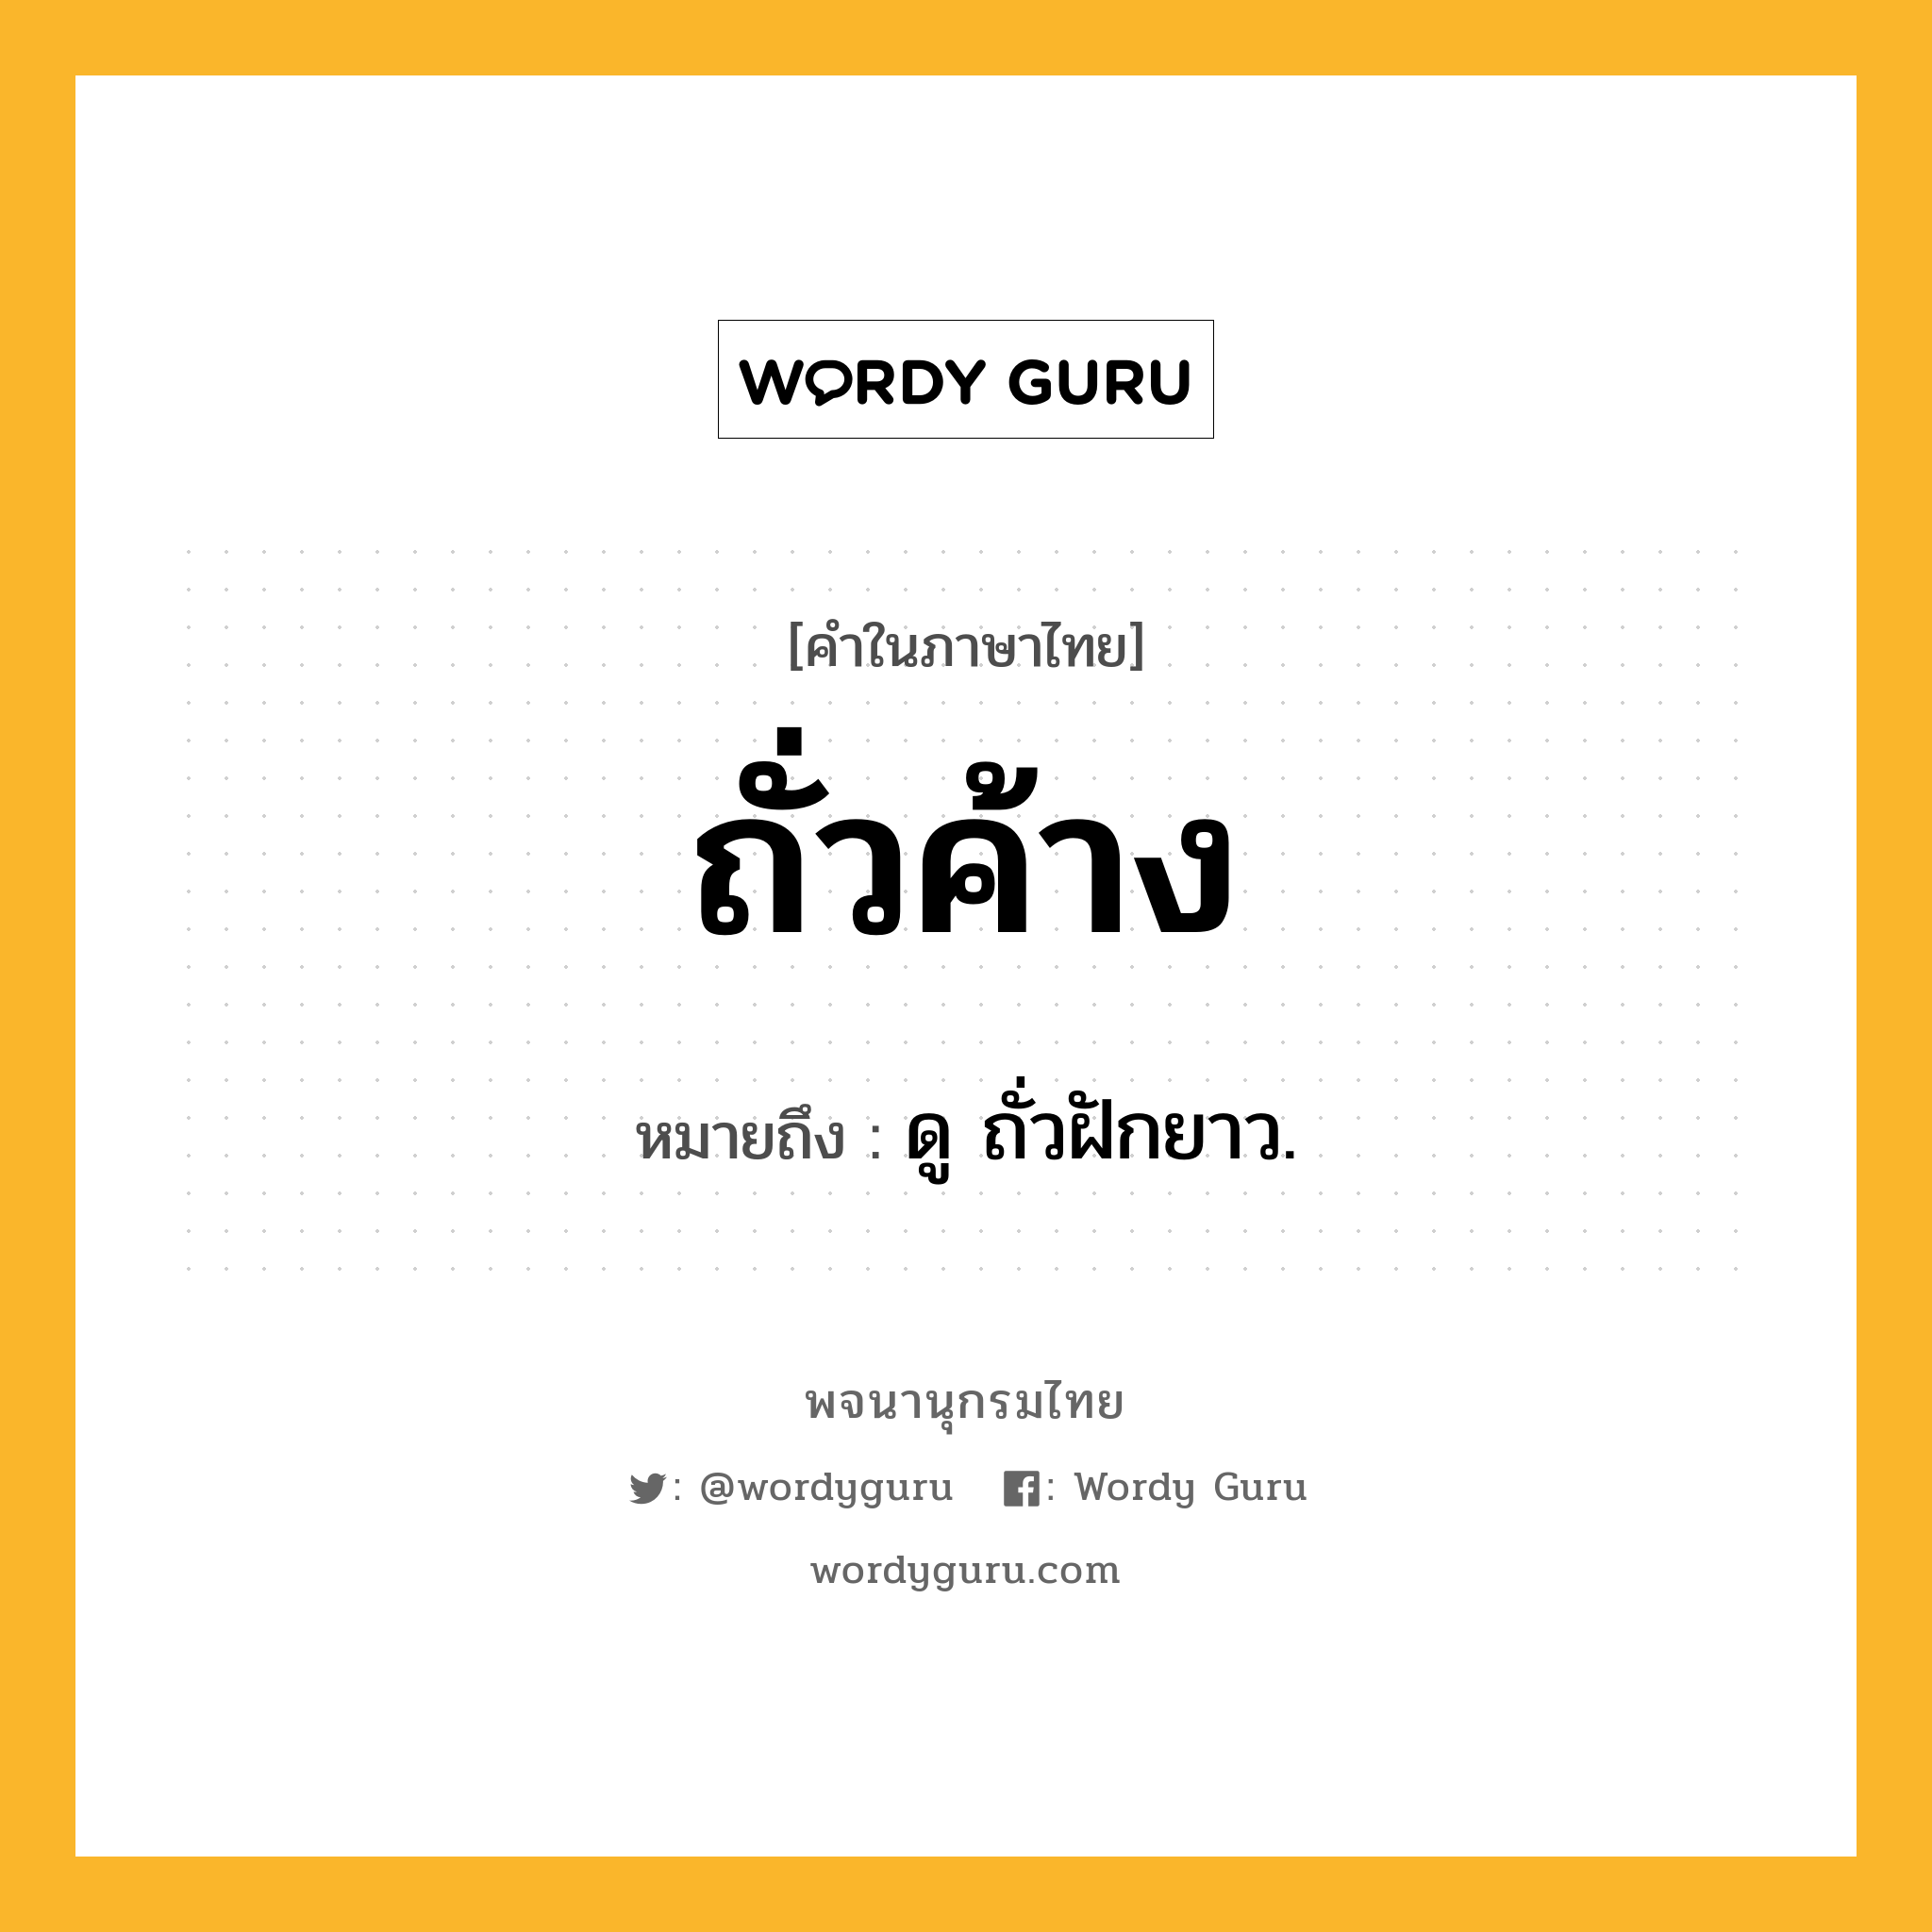 ถั่วค้าง หมายถึงอะไร?, คำในภาษาไทย ถั่วค้าง หมายถึง ดู ถั่วฝักยาว.